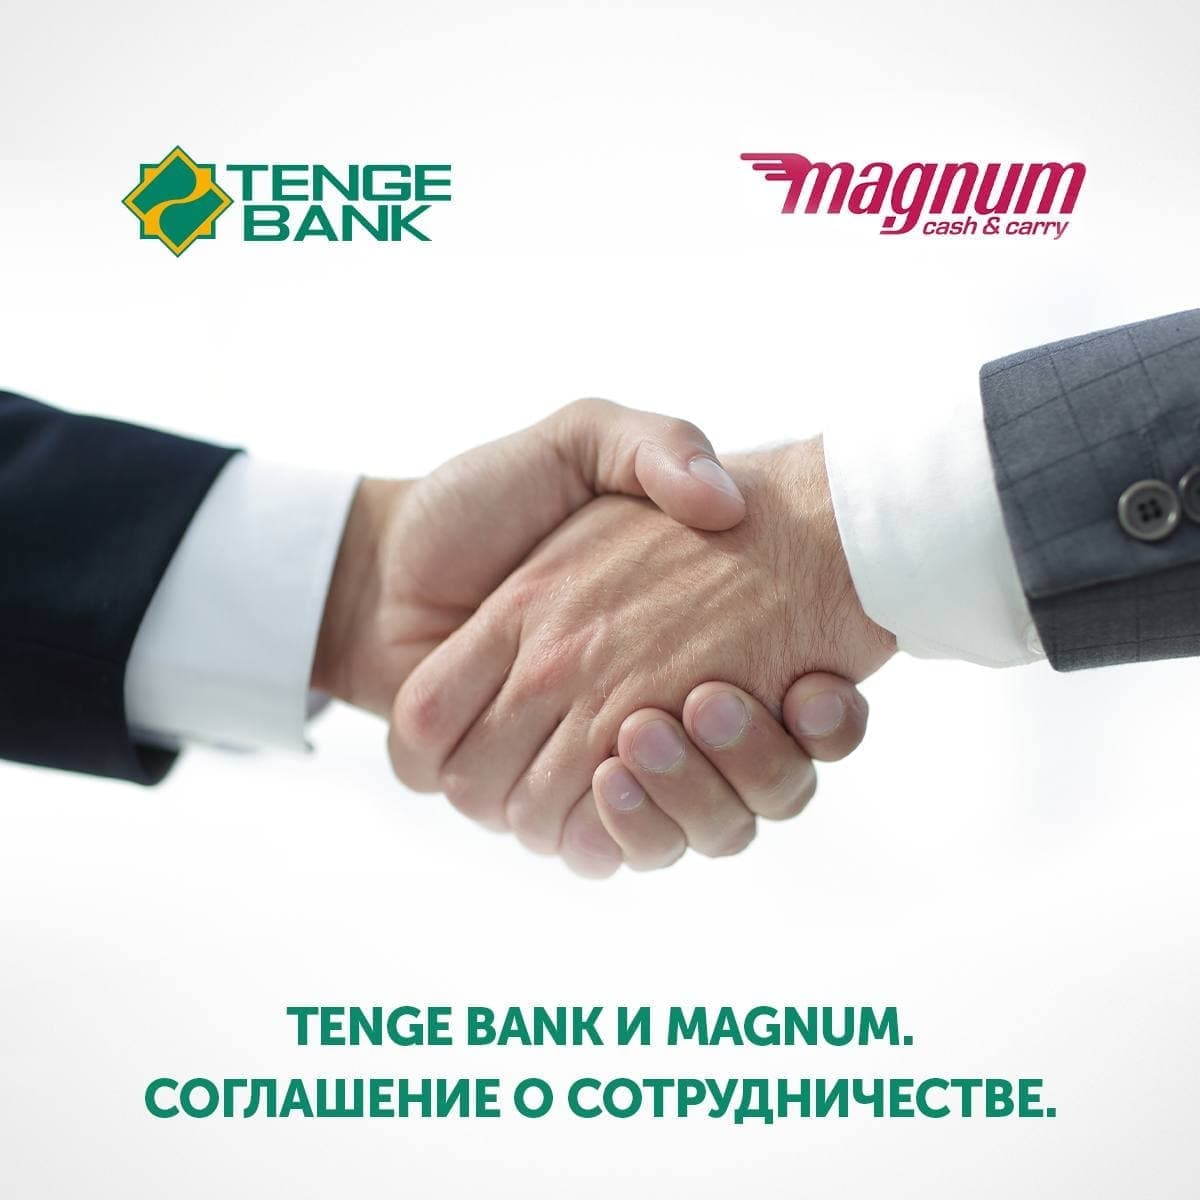 Magnum и Tenge Bank: сотрудничество во благо каждого!